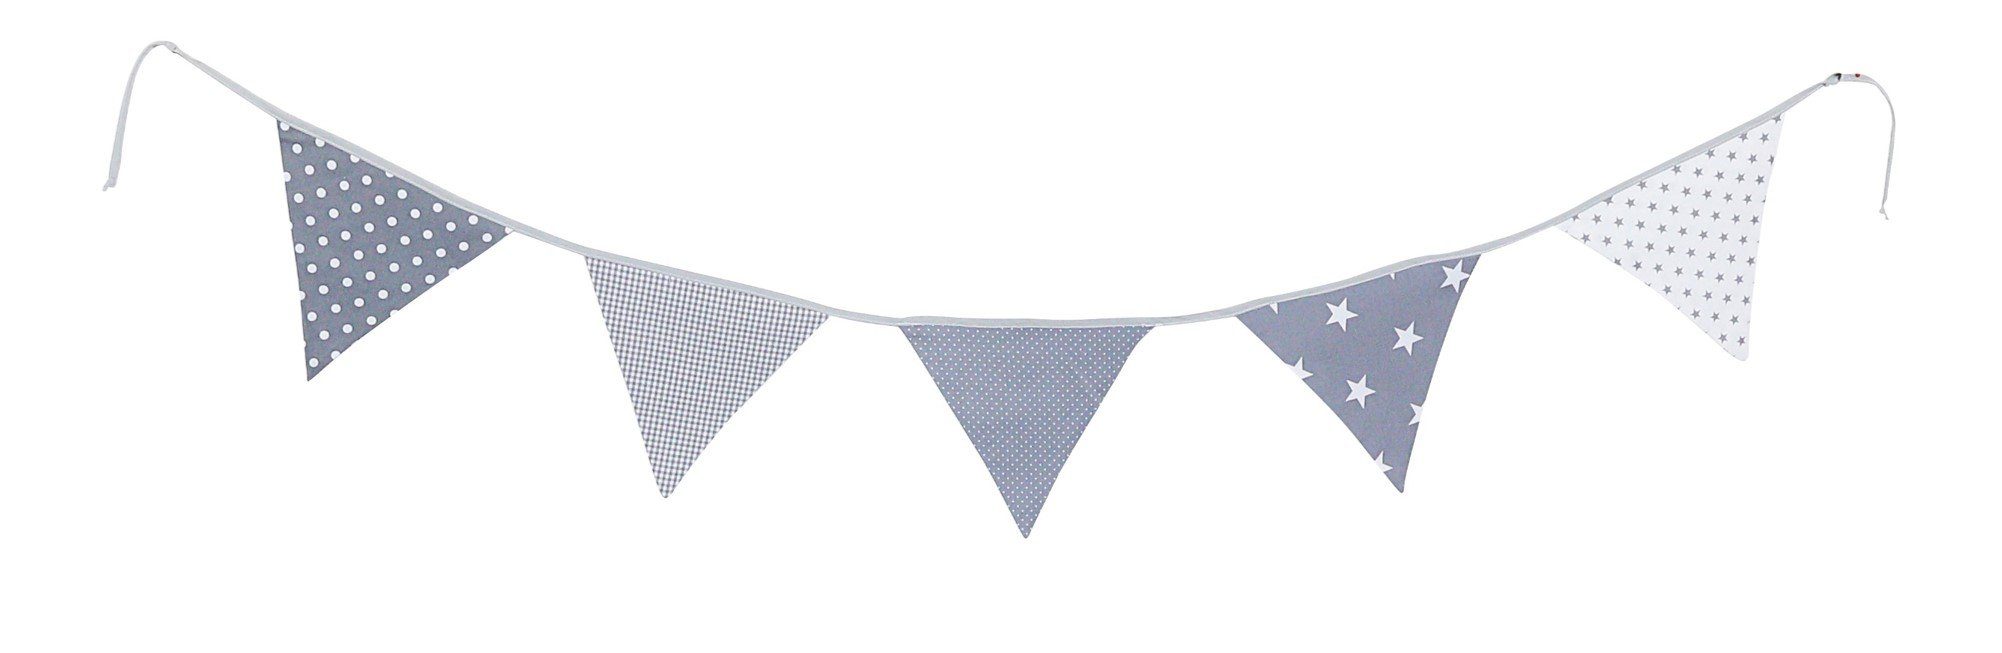 ULLENBOOM ® Wimpelkette Wimpelkette Graue Sterne 190 cm mit 5 Wimpeln (Made in EU), Deko-Girlande aus Stoff für das Kinderzimmer, 100% Baumwolle